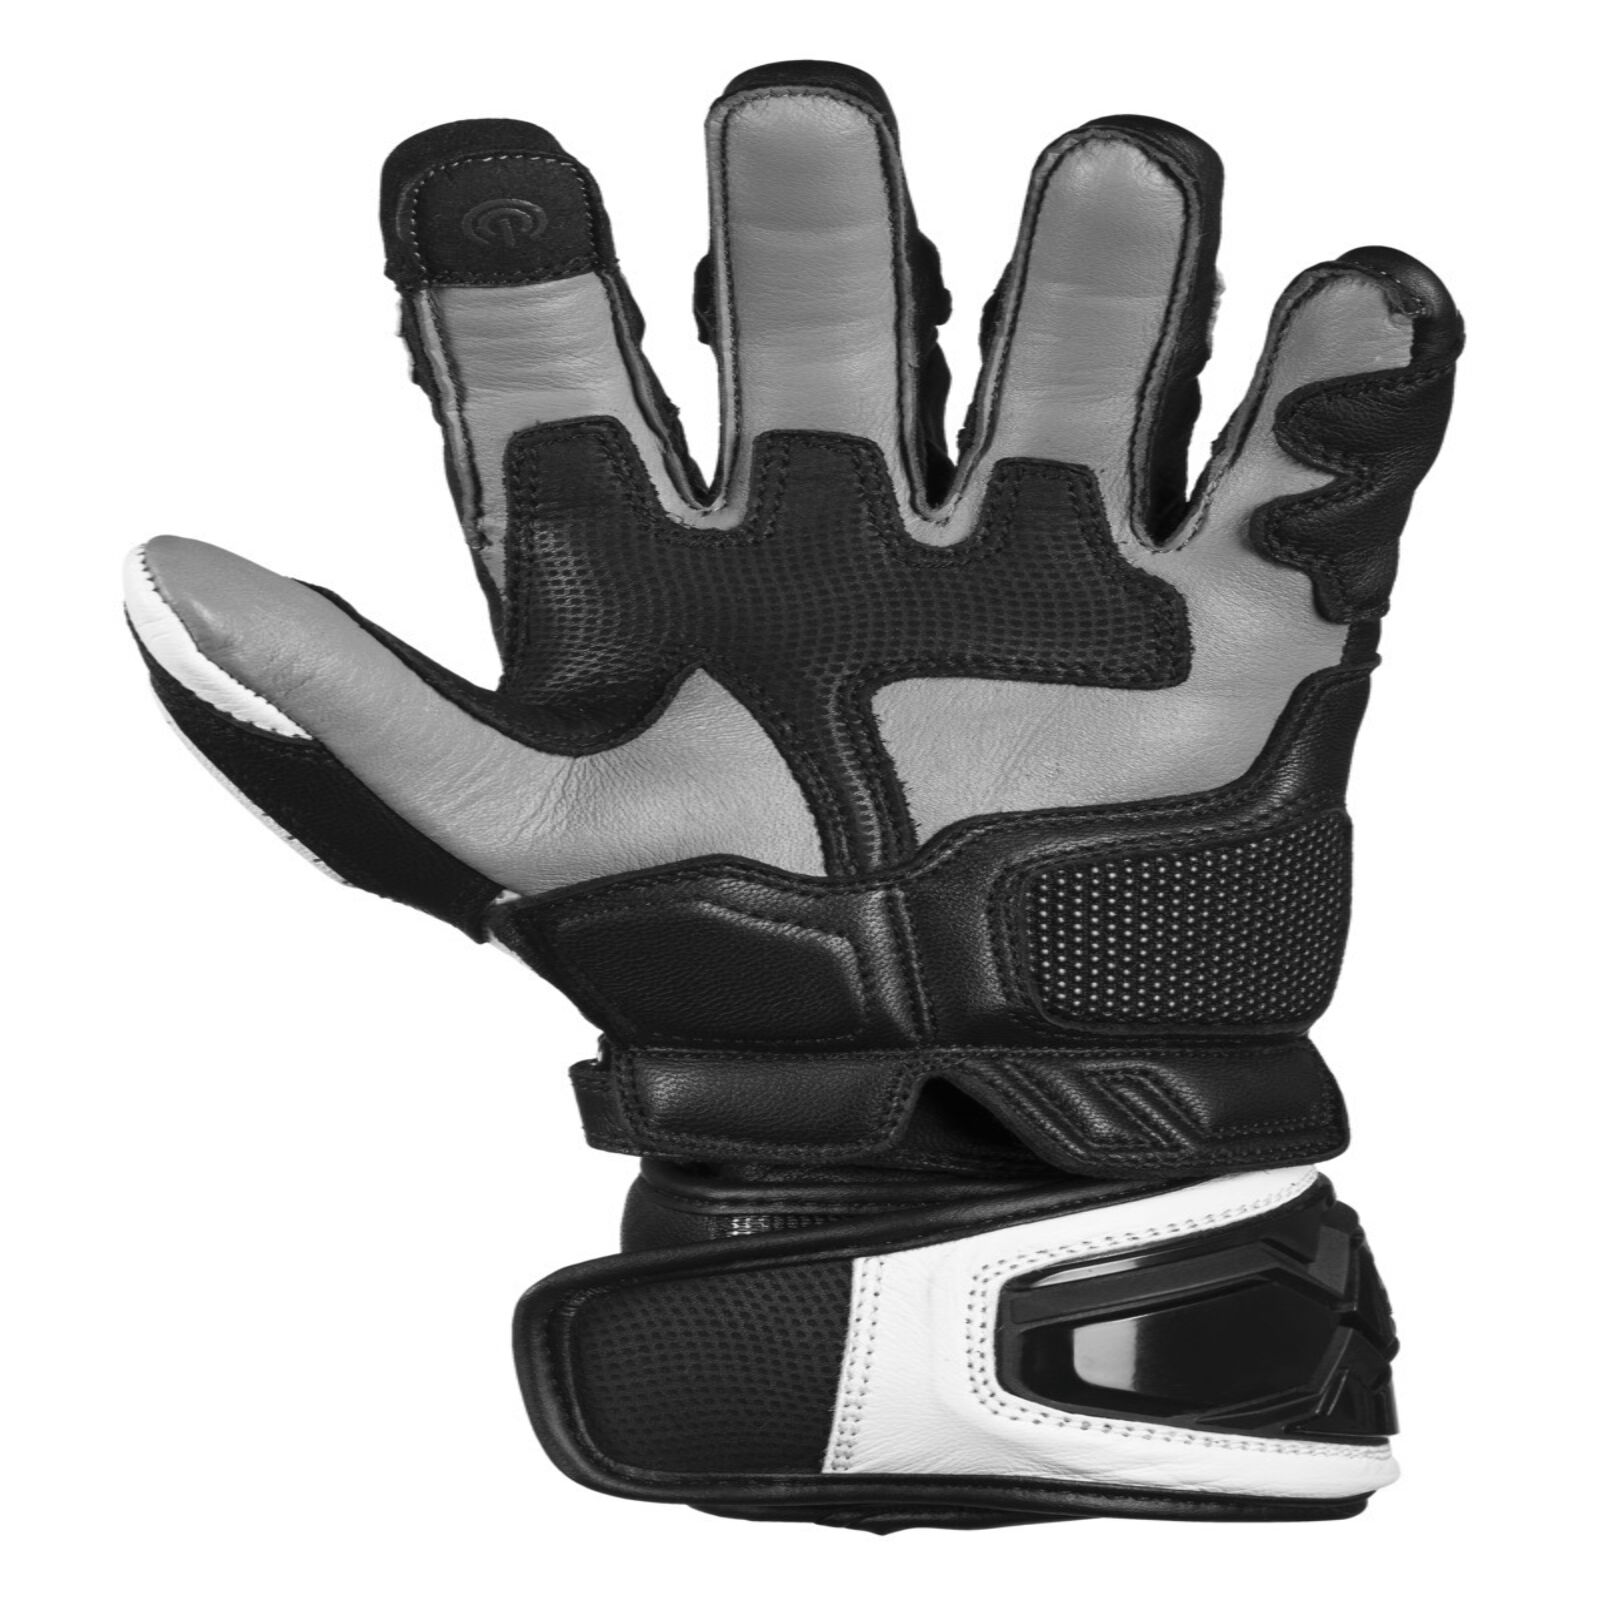 Obrázek produktu Sportovní rukavice iXS RS-300 2.0 X40458 černo-bílá 3XL X40458-031-3XL